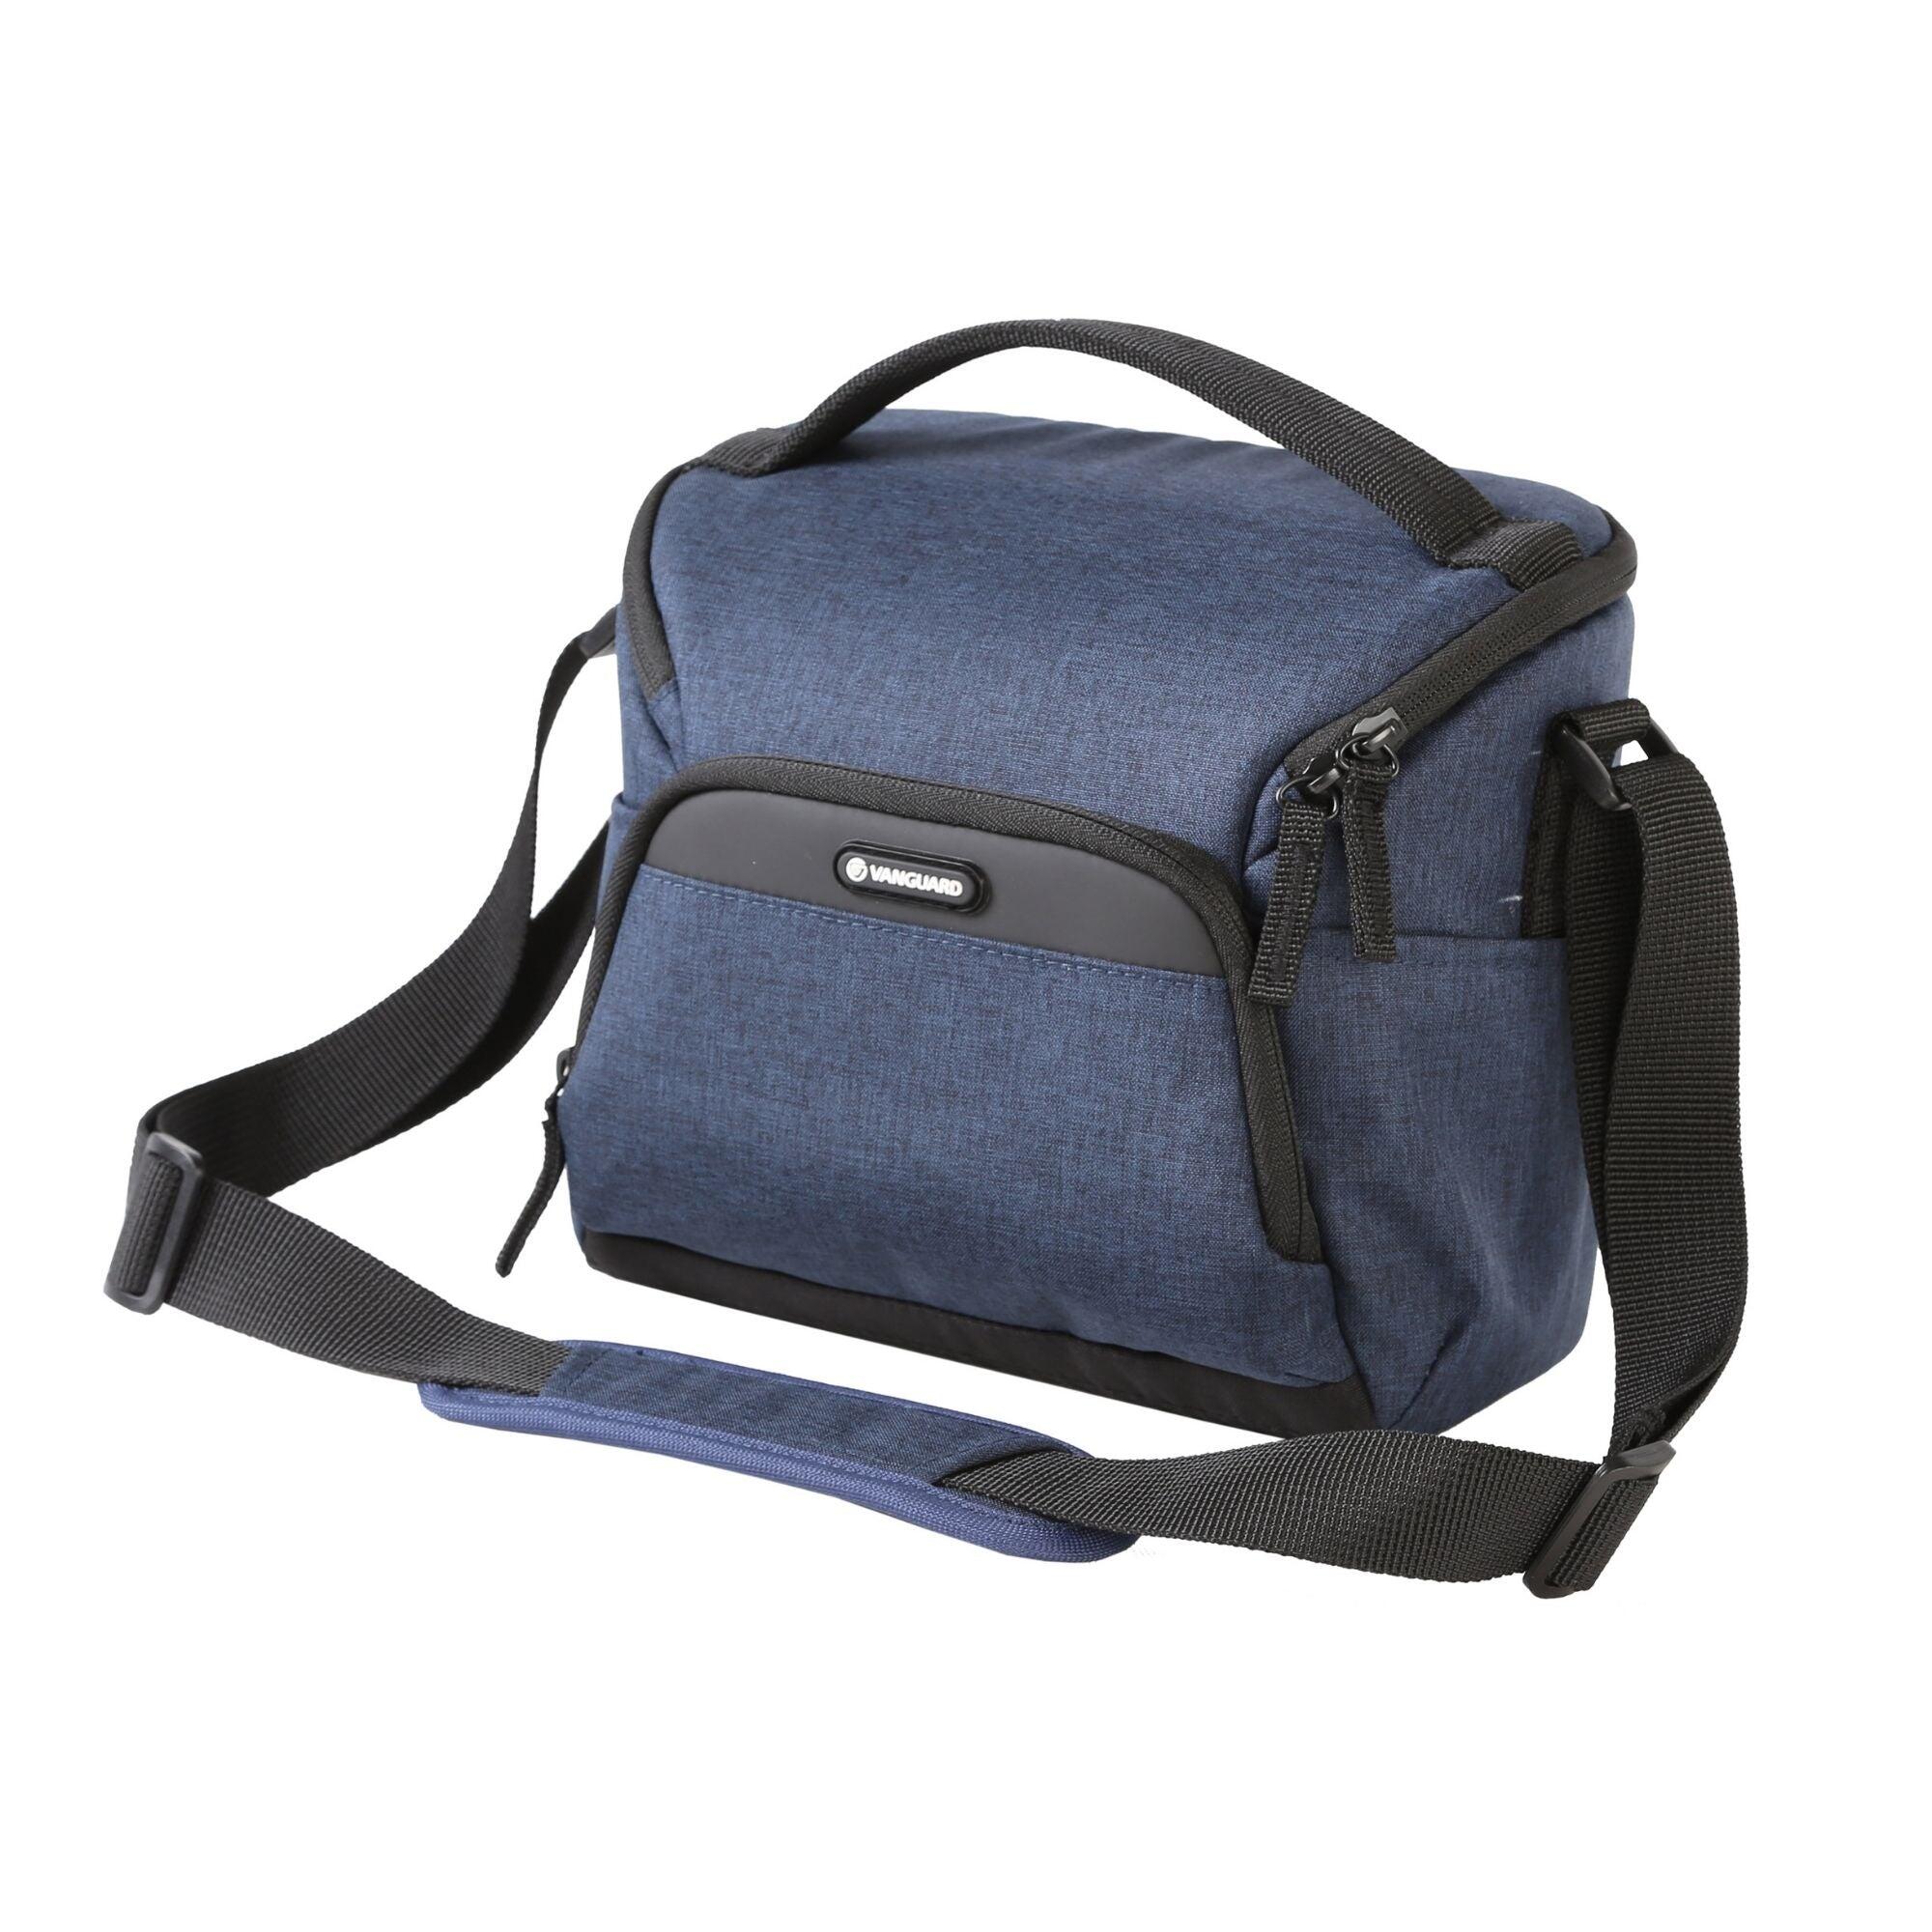 VESTA Aspire 21 NV Shoulder Bag - Blue 1/5